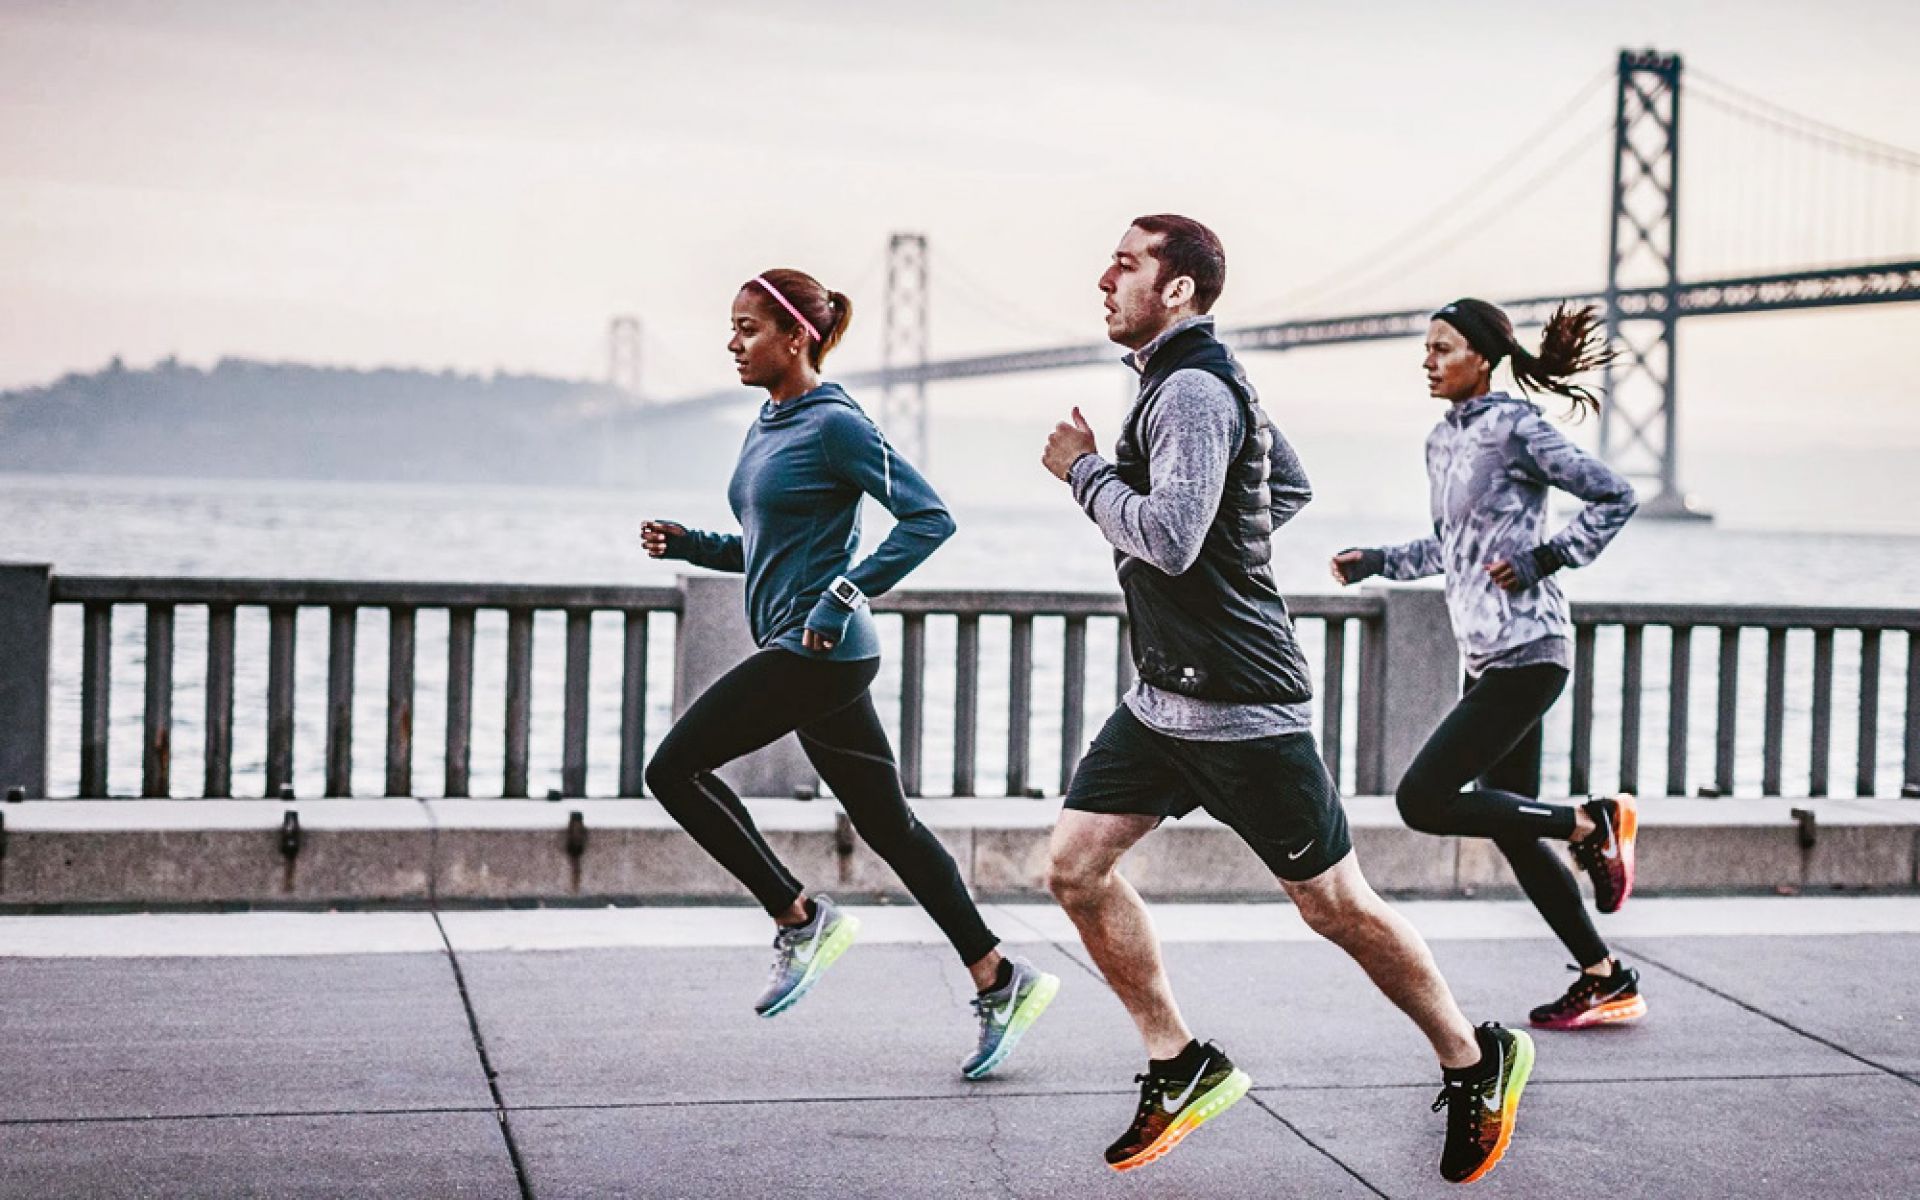 Бежать спорить. Nike Running. Nike Running бег. Занятие спортом. Фотосессия в спортивном стиле.